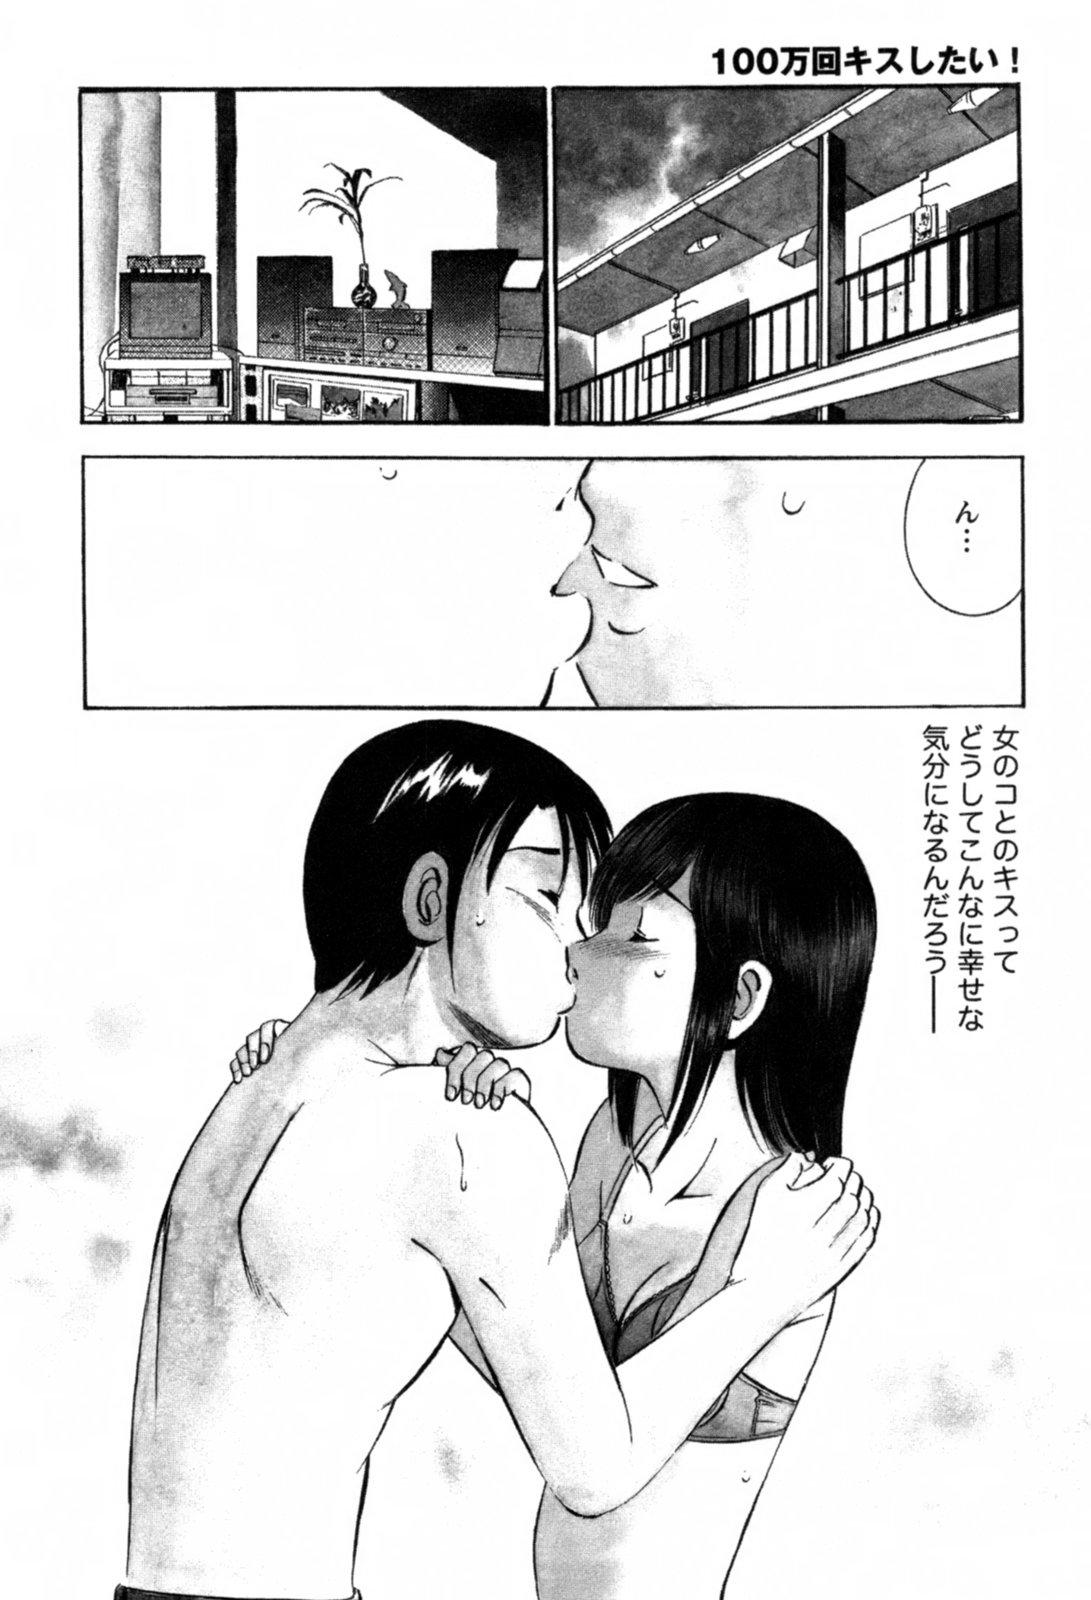 Hot Mom 100 Mankai Kisu Shitai Vol.1 Monster - Page 9